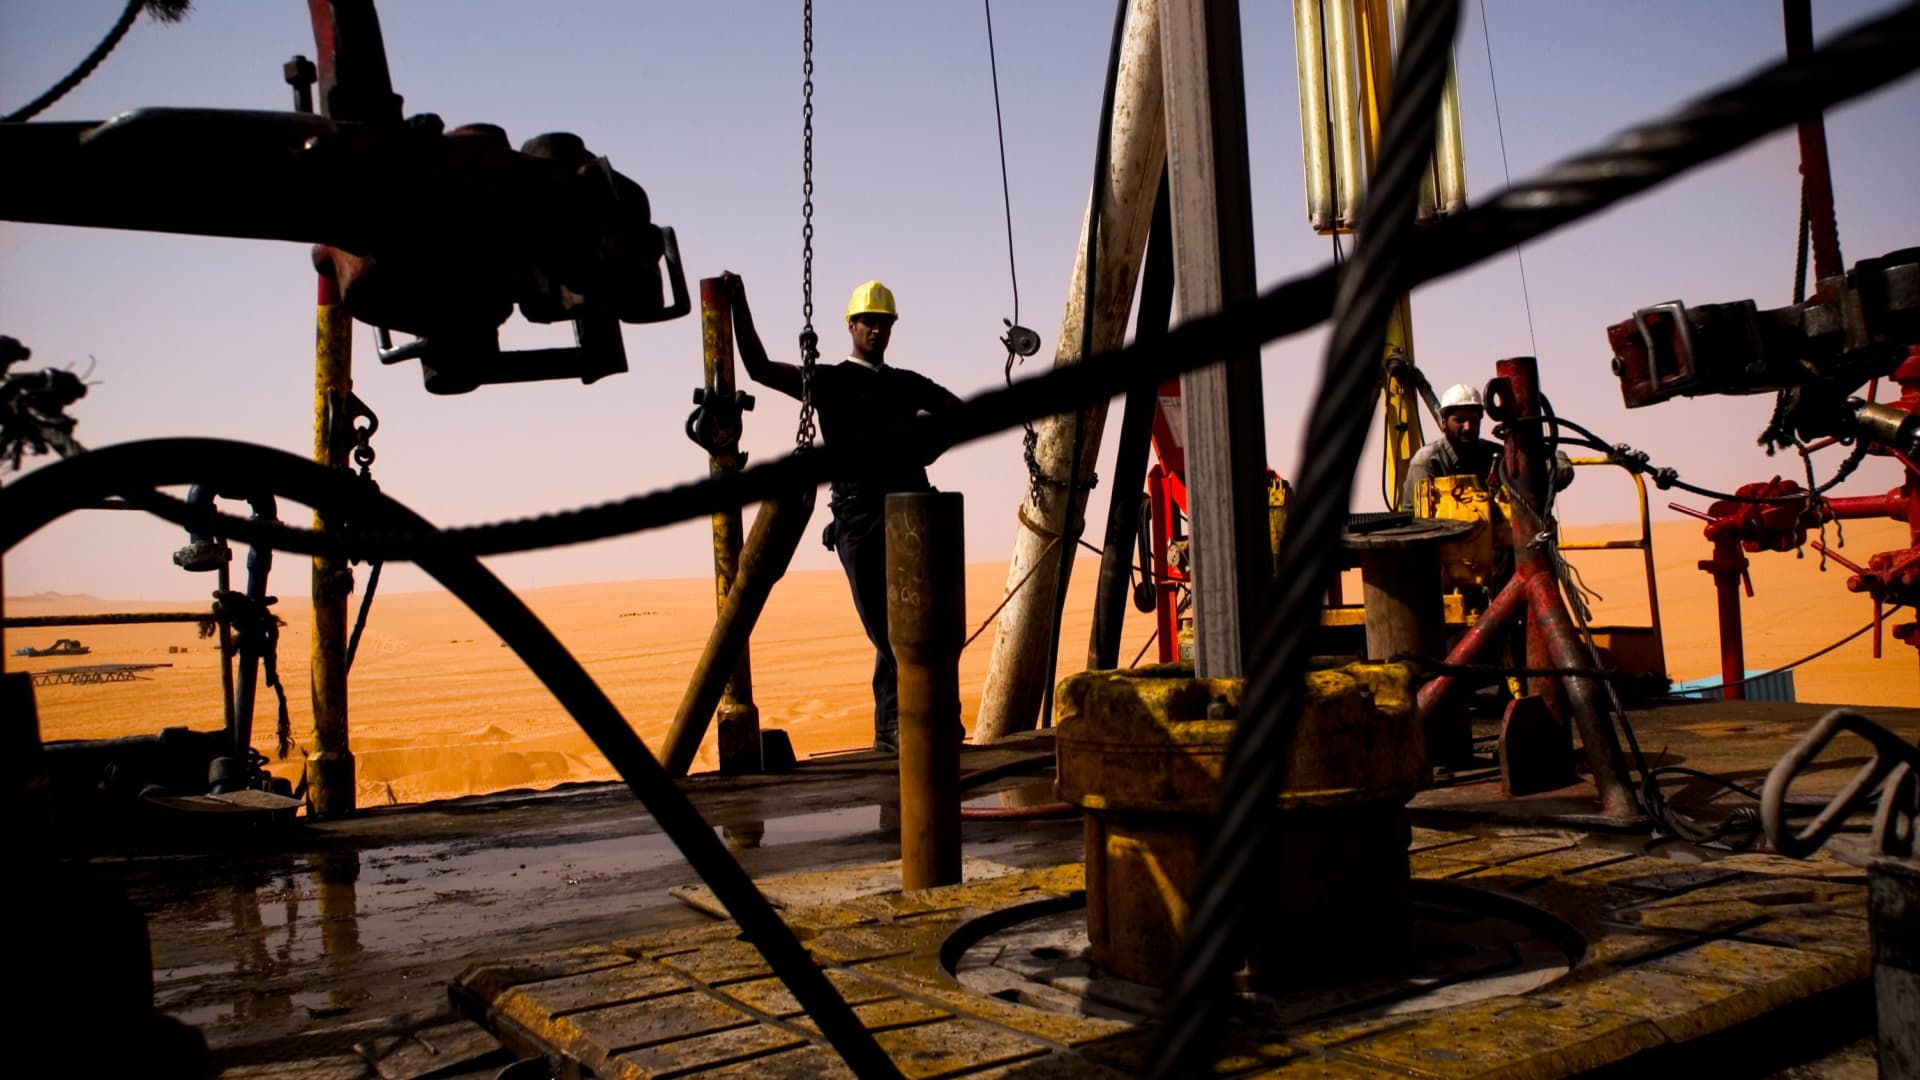 Ceny ropy są stabilne, ponieważ inwestorzy rozważają ponowne uruchomienie libijskich pól naftowych i napięcia na Bliskim Wschodzie